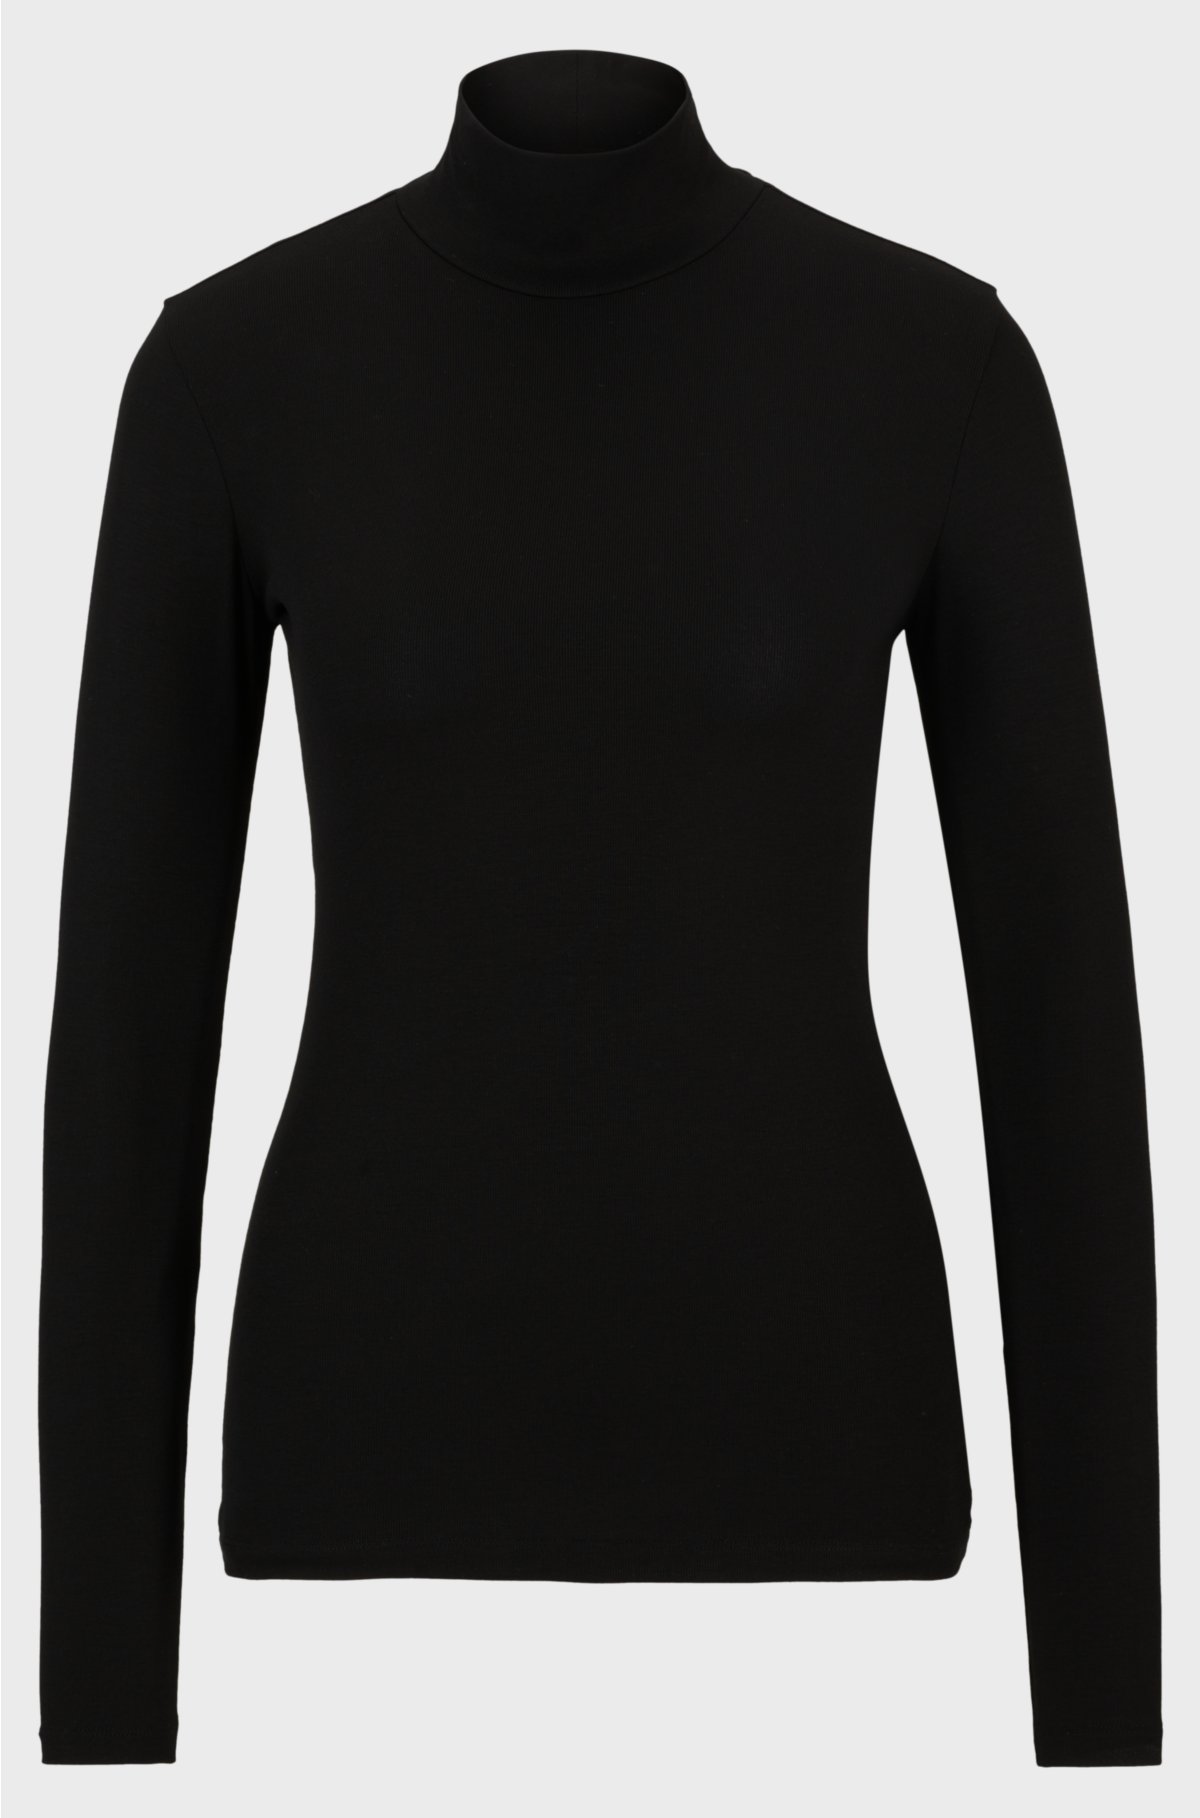 Long-sleeved slim-fit T-shirt with mock neckline, Black